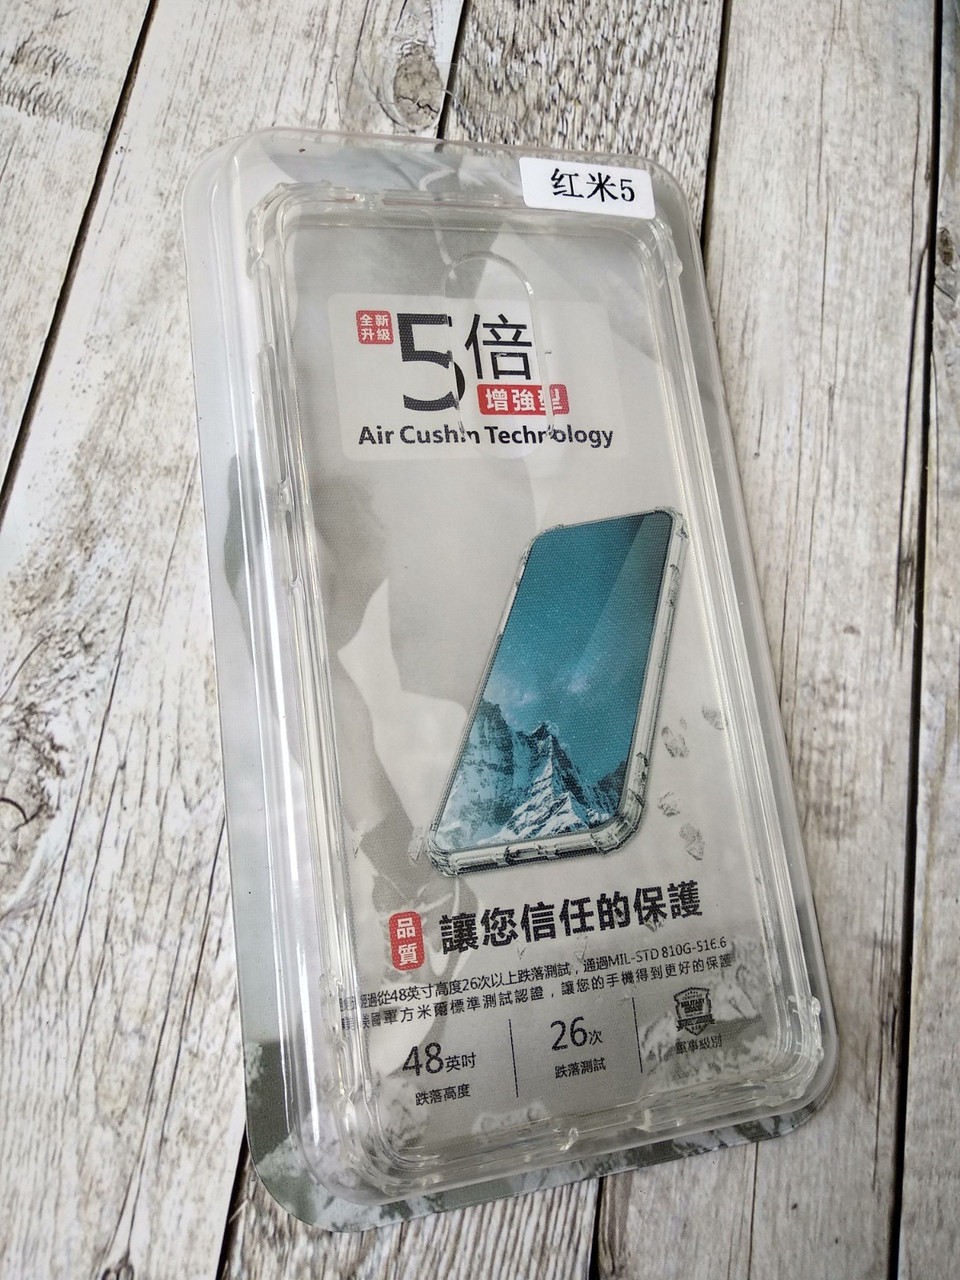 

Чехол для телефона Huawei Y6 (2018) Silicone Military grade (противоударный) прозрачный